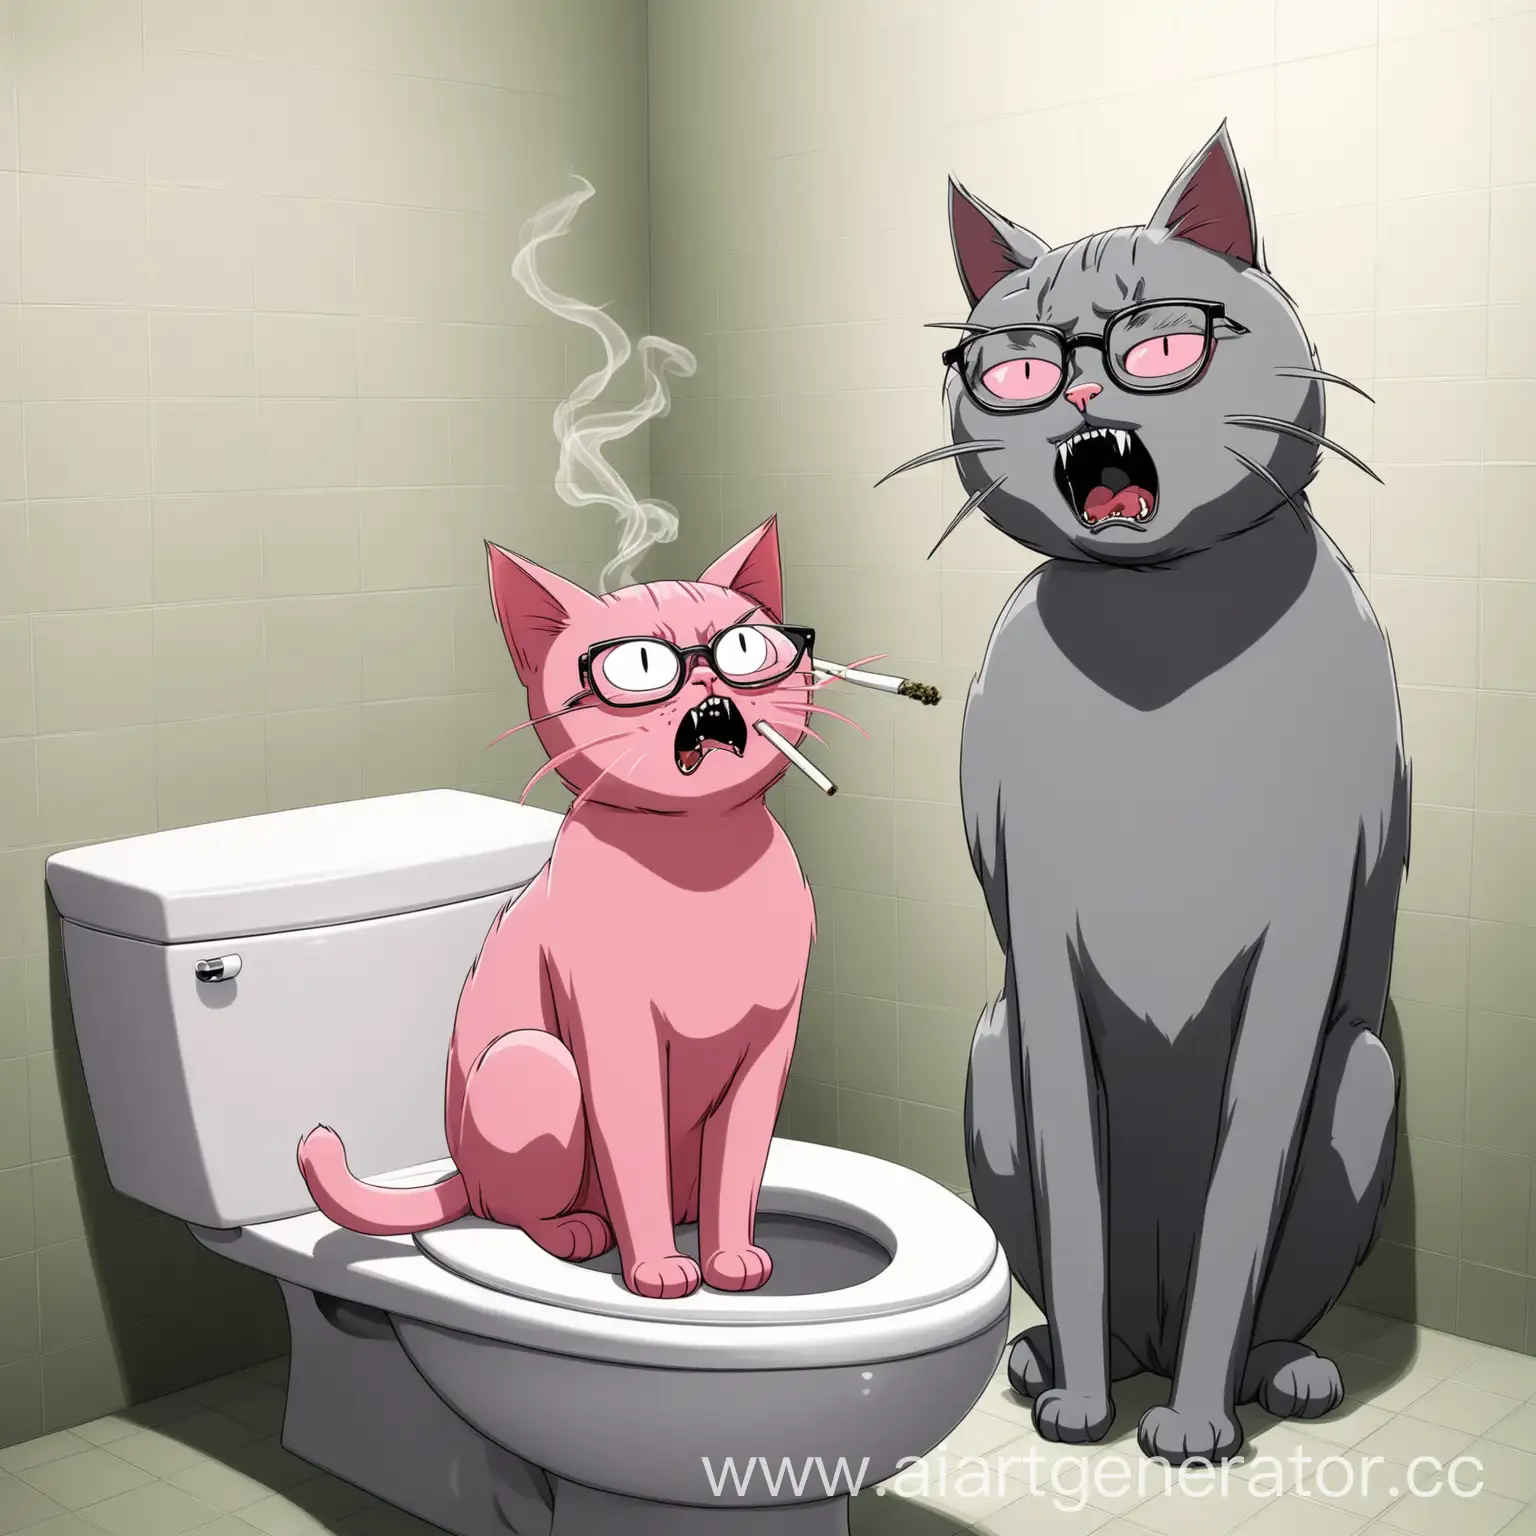 Розовый кот сидит на туалете и курит травку, рядом стоит серый кот в очках и кричит на розового кота